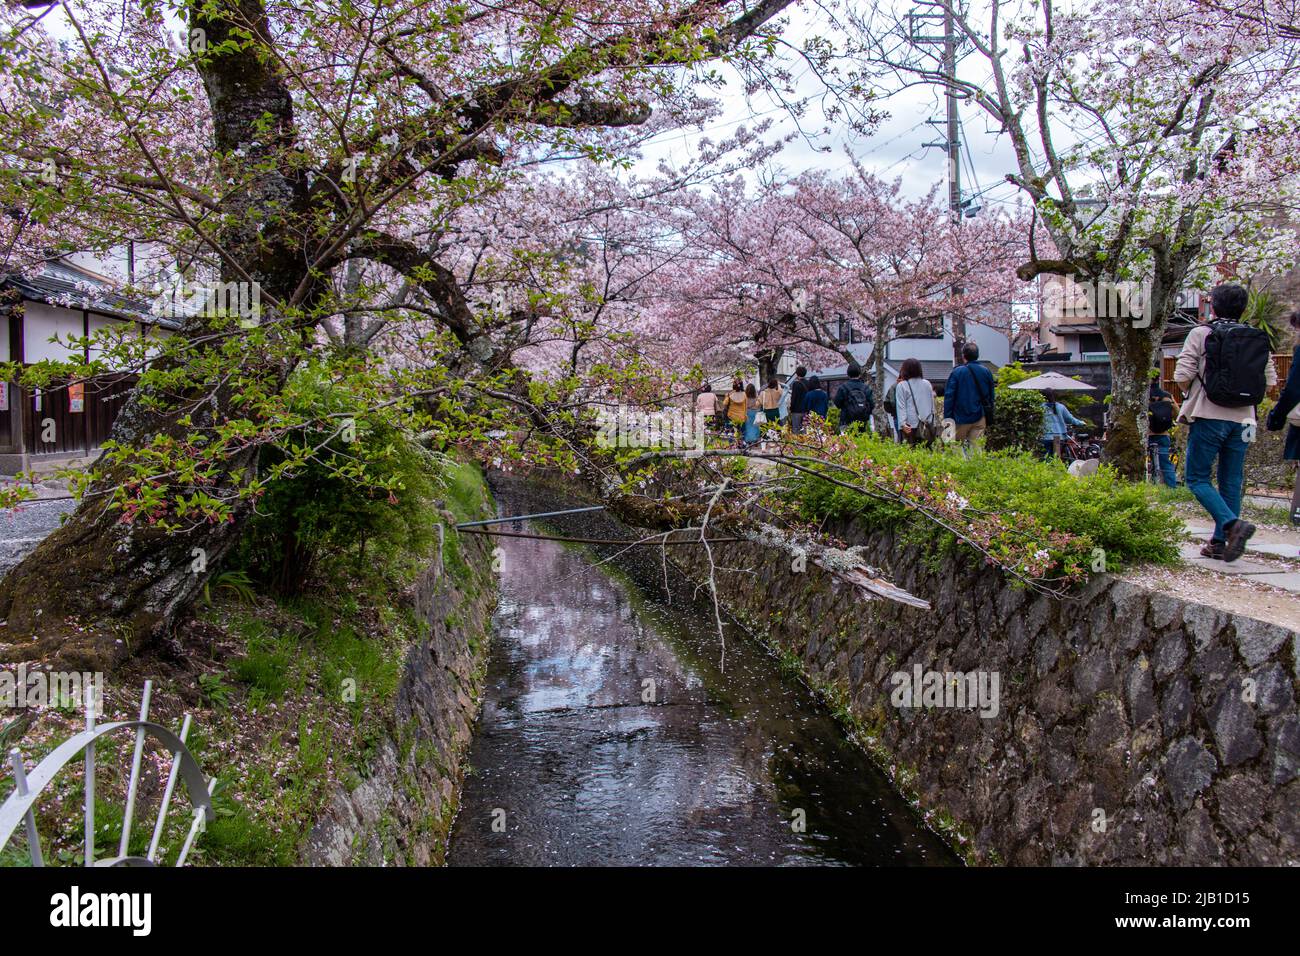 Philosopher's Walk, ein Pfad, der an bewölktem Tag einem von Kirschbäumen gesäumten Kanal (Lake Biwa) folgt. Es ist ein beliebter Ort für Menschen während der Hanami-Saison. Stockfoto